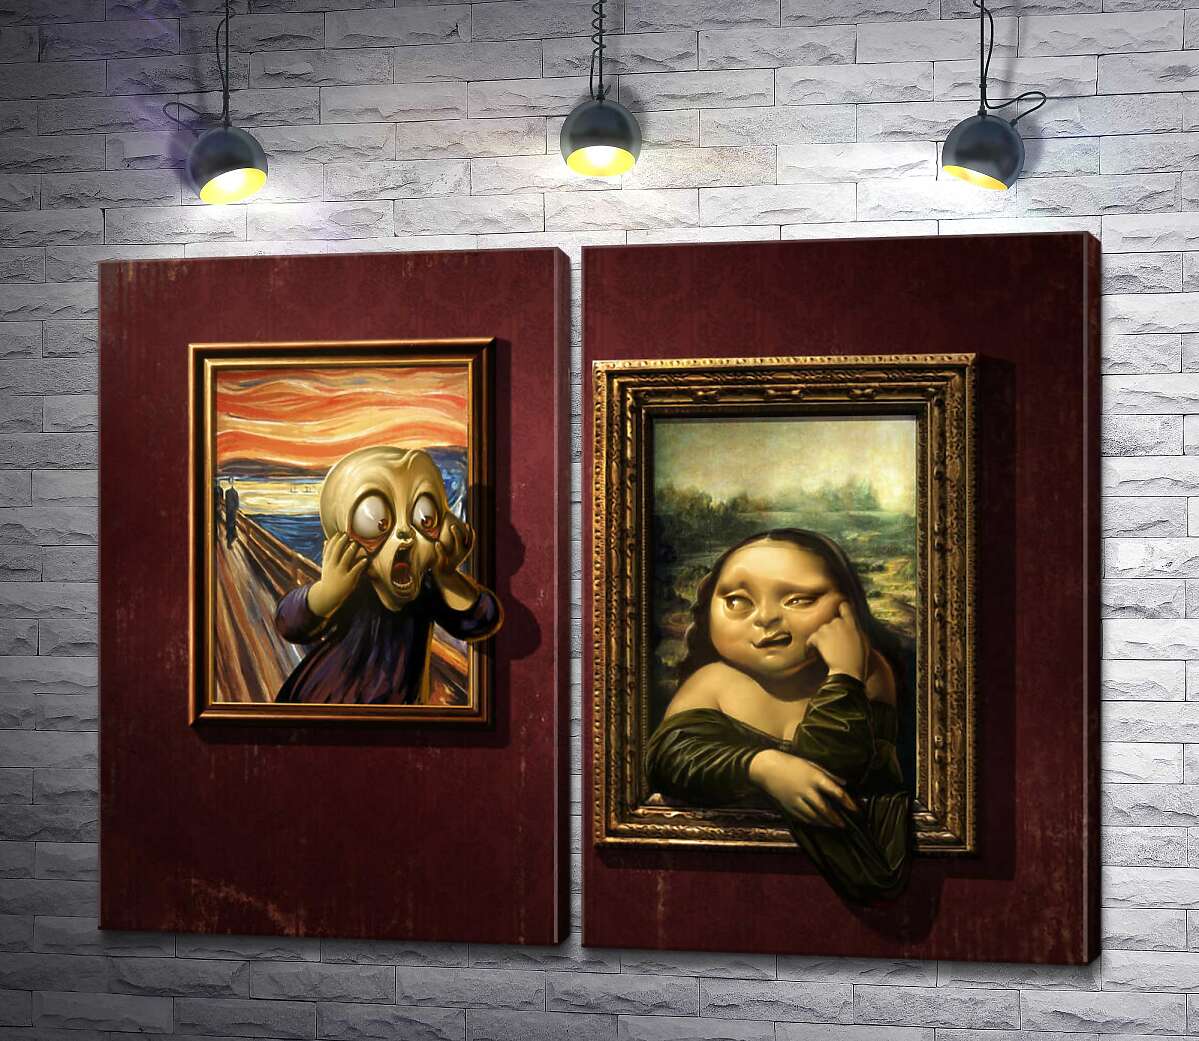 модульна картина Битва картин: "Крик" ( Skrik) проти "Мони Лізи" (Mona Lisa)